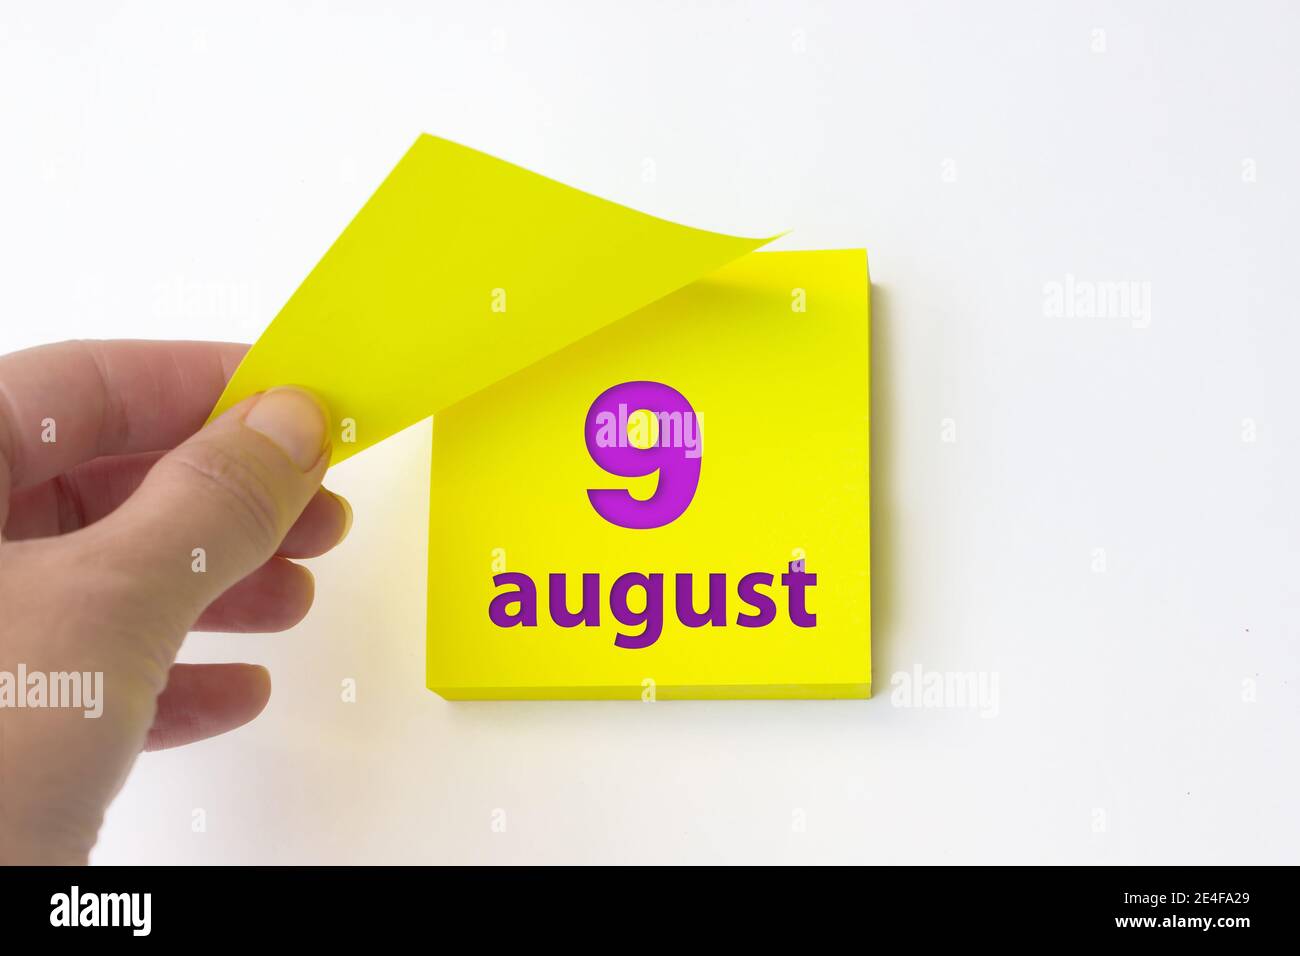 9 août. Jour 9 du mois, date du calendrier. La main se défait de la feuille jaune du calendrier. Concept mois d'été, jour de l'année Banque D'Images